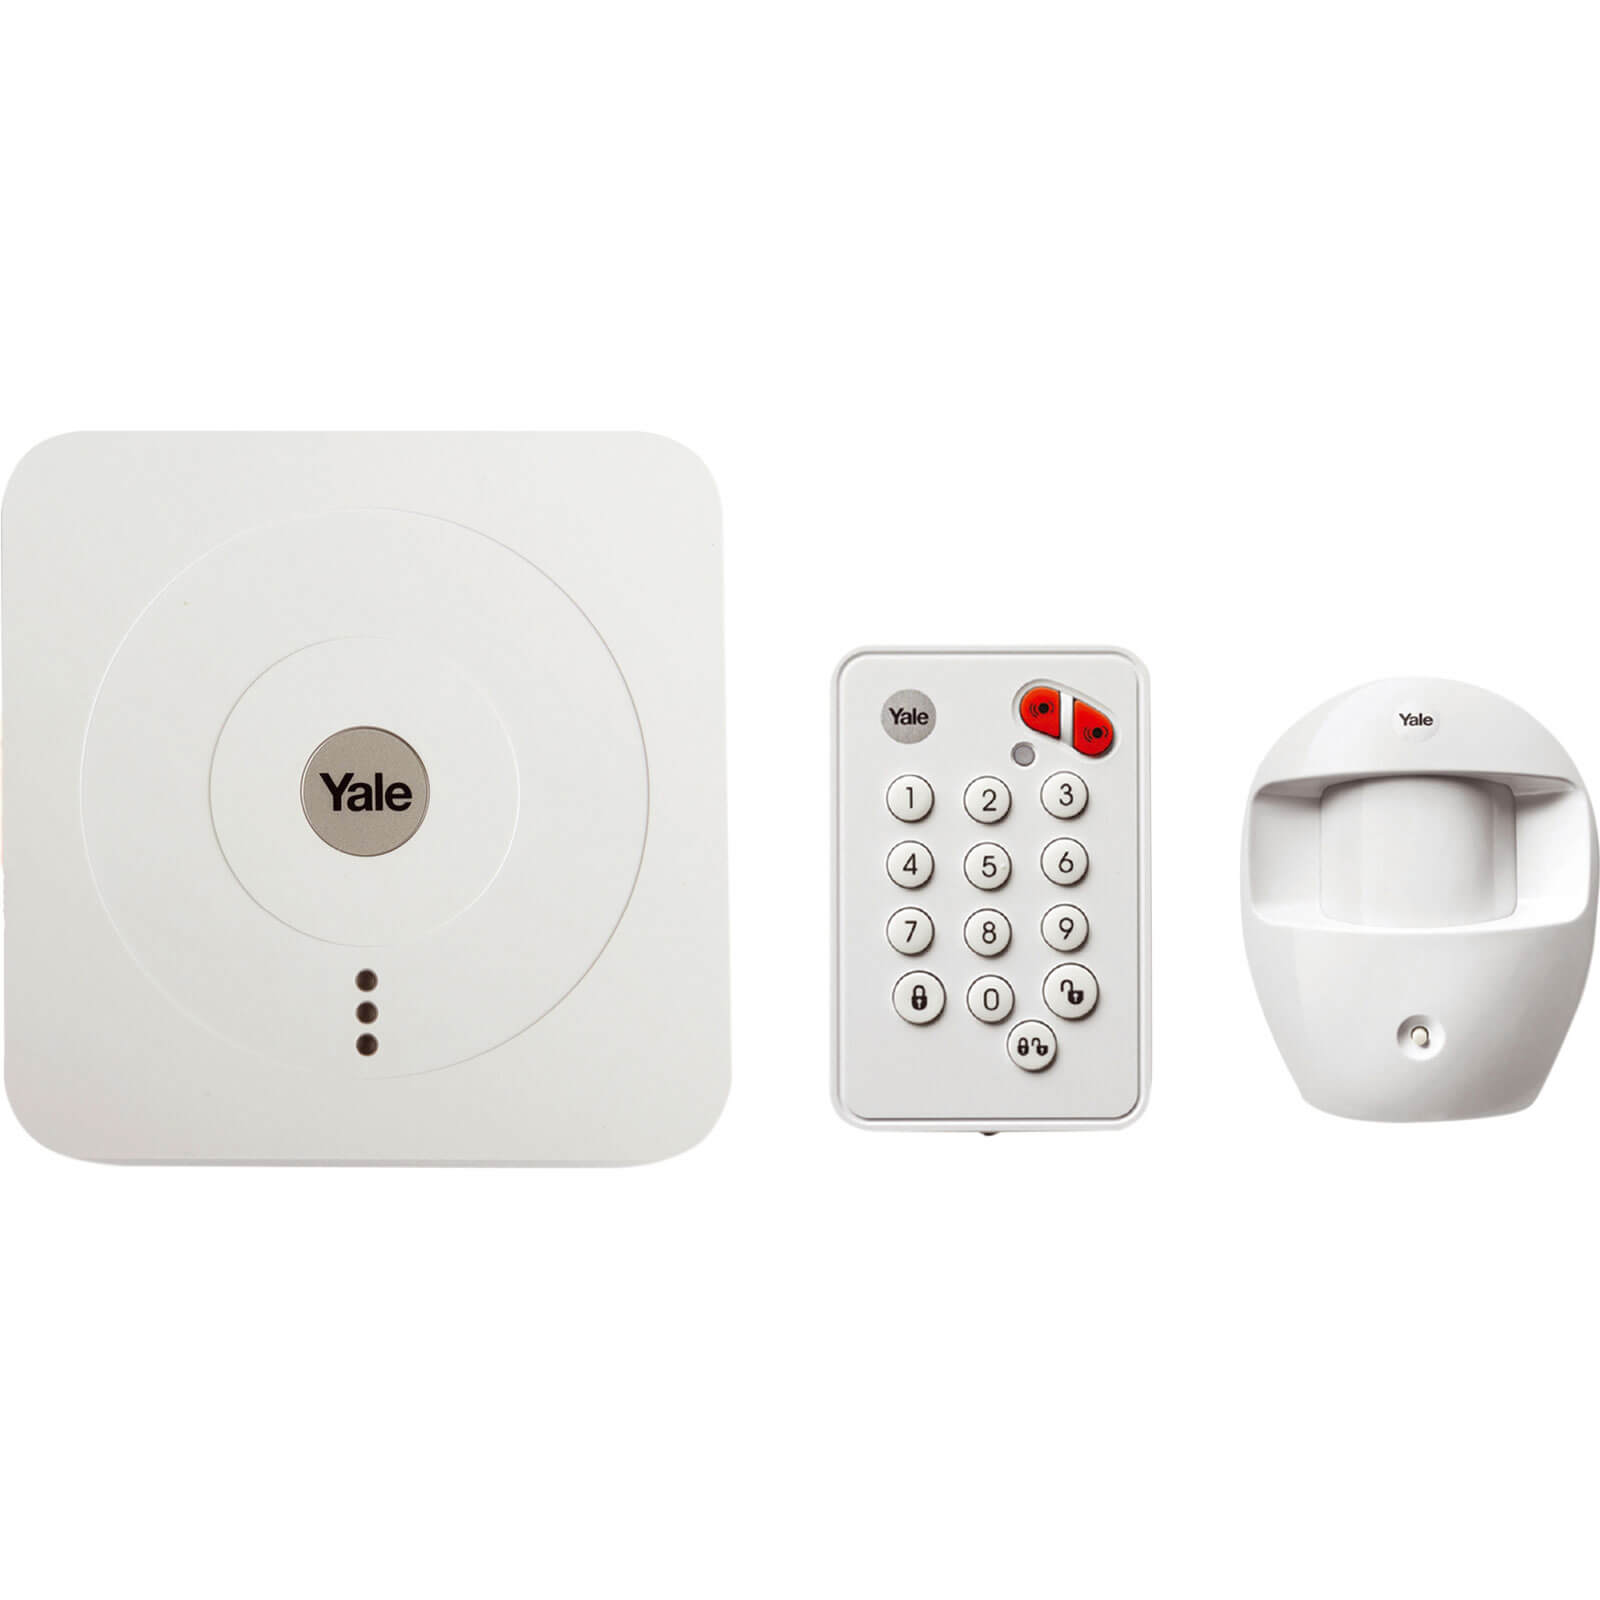 Image of Yale Alarms Sr-310 Smart Home Alarm Starter Kit